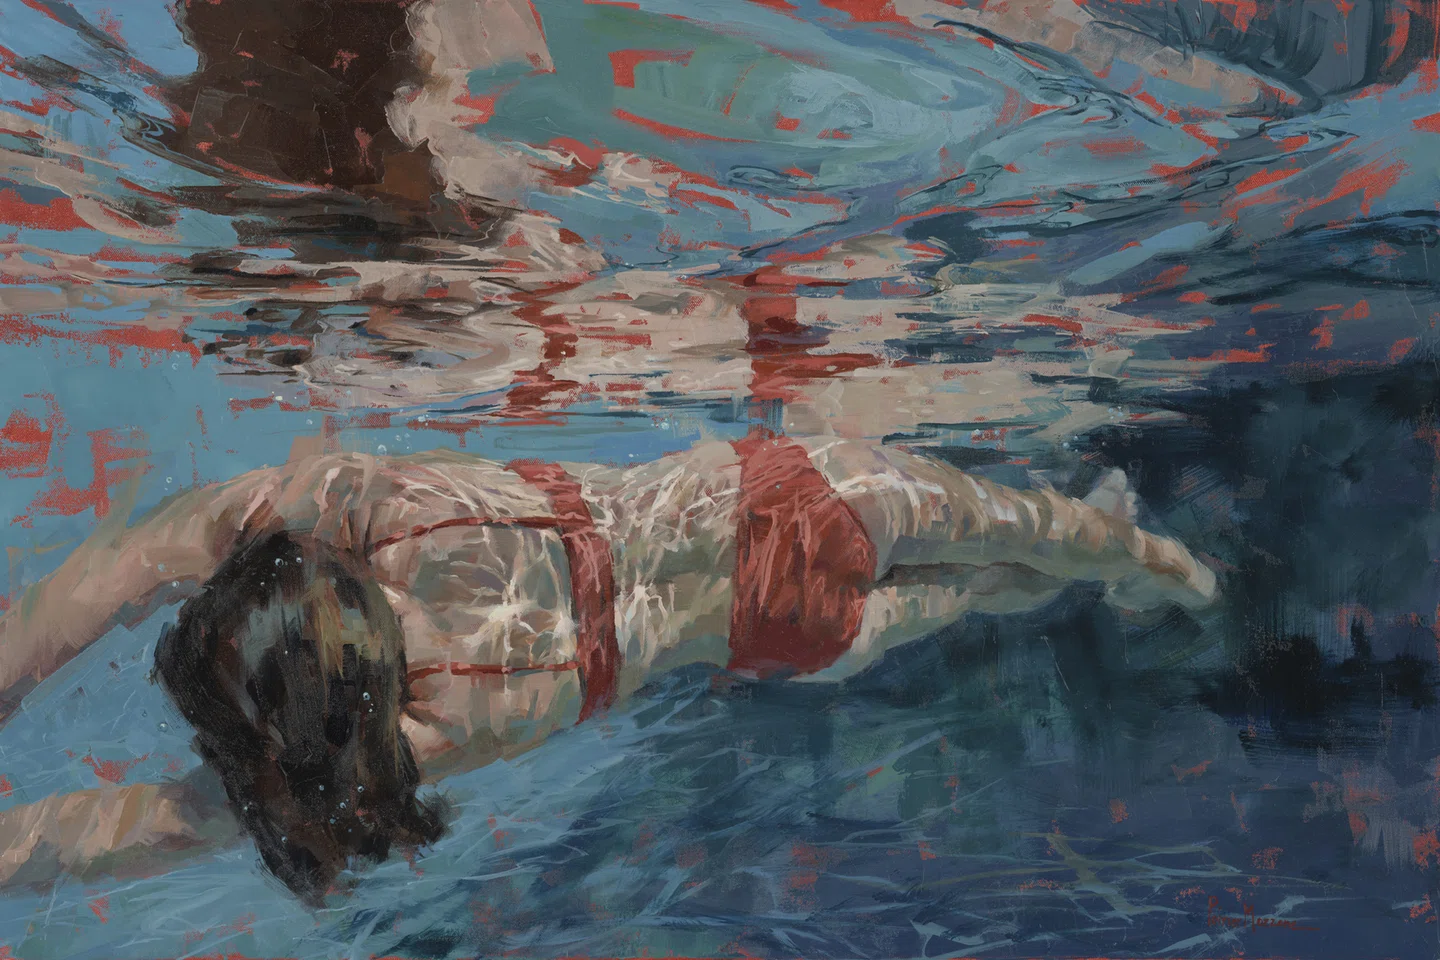 Reviva as memórias do verão através das pinturas de água de Michele Poirier Mozzone